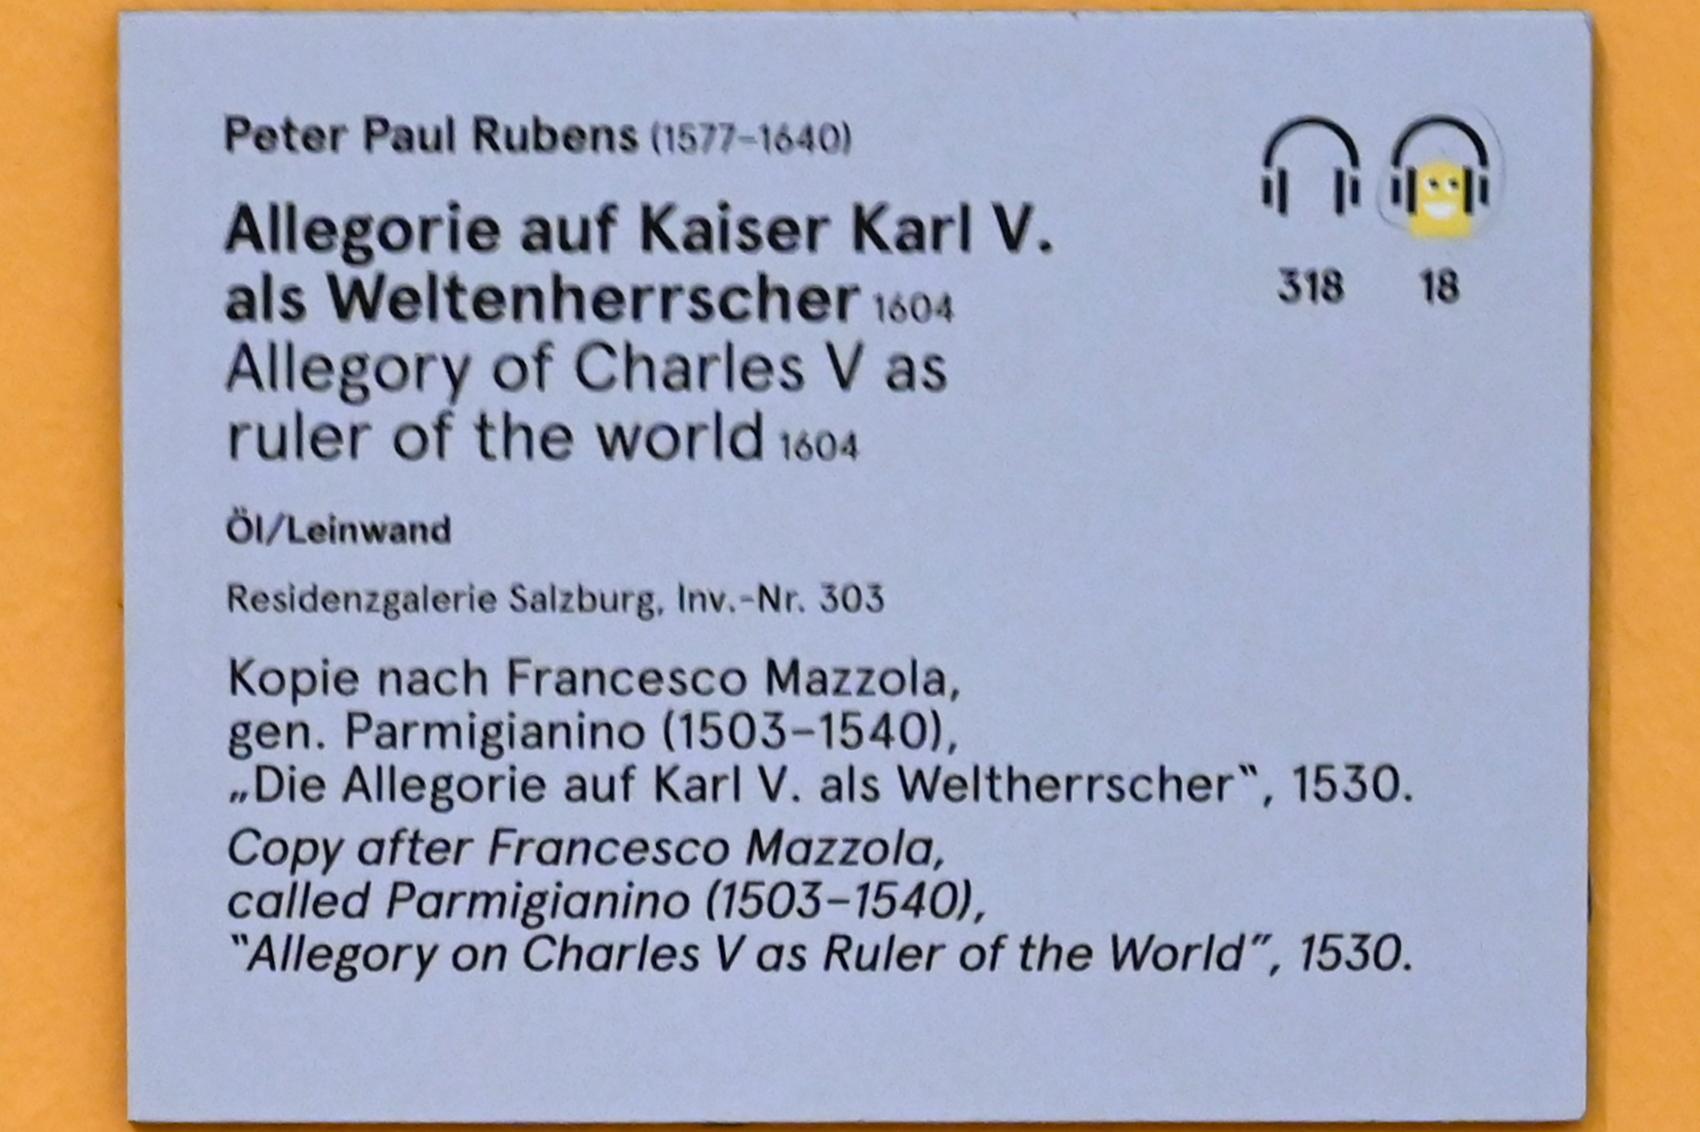 Peter Paul Rubens (1598–1650), Allegorie auf Kaiser Karl V. als Weltenherrscher, Salzburg, Salzburger Residenz, Residenzgalerie, 1604, Bild 3/4